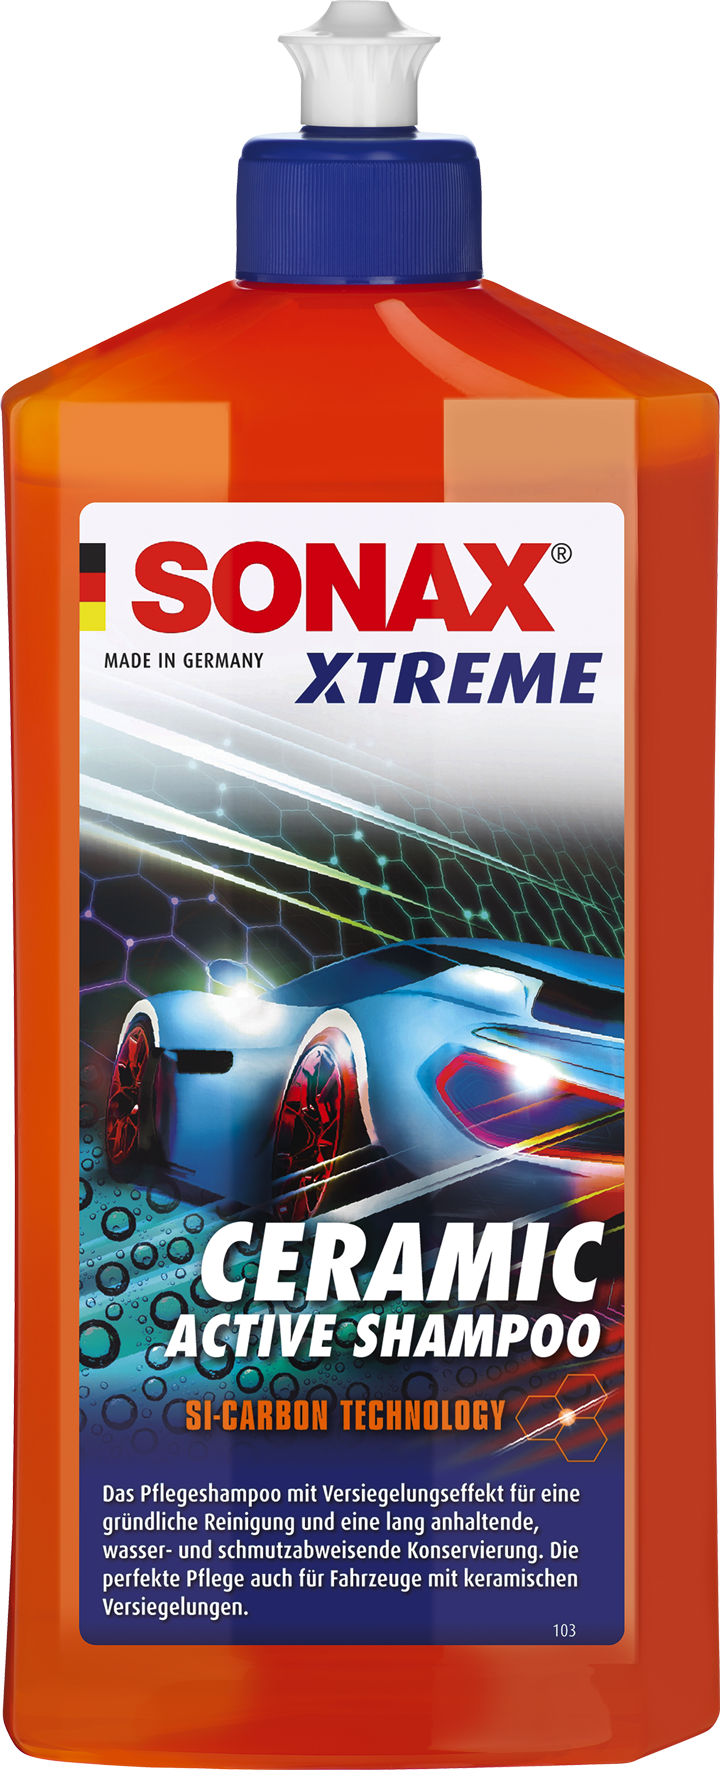 Sonax Xtreme Ceramic active shampoo